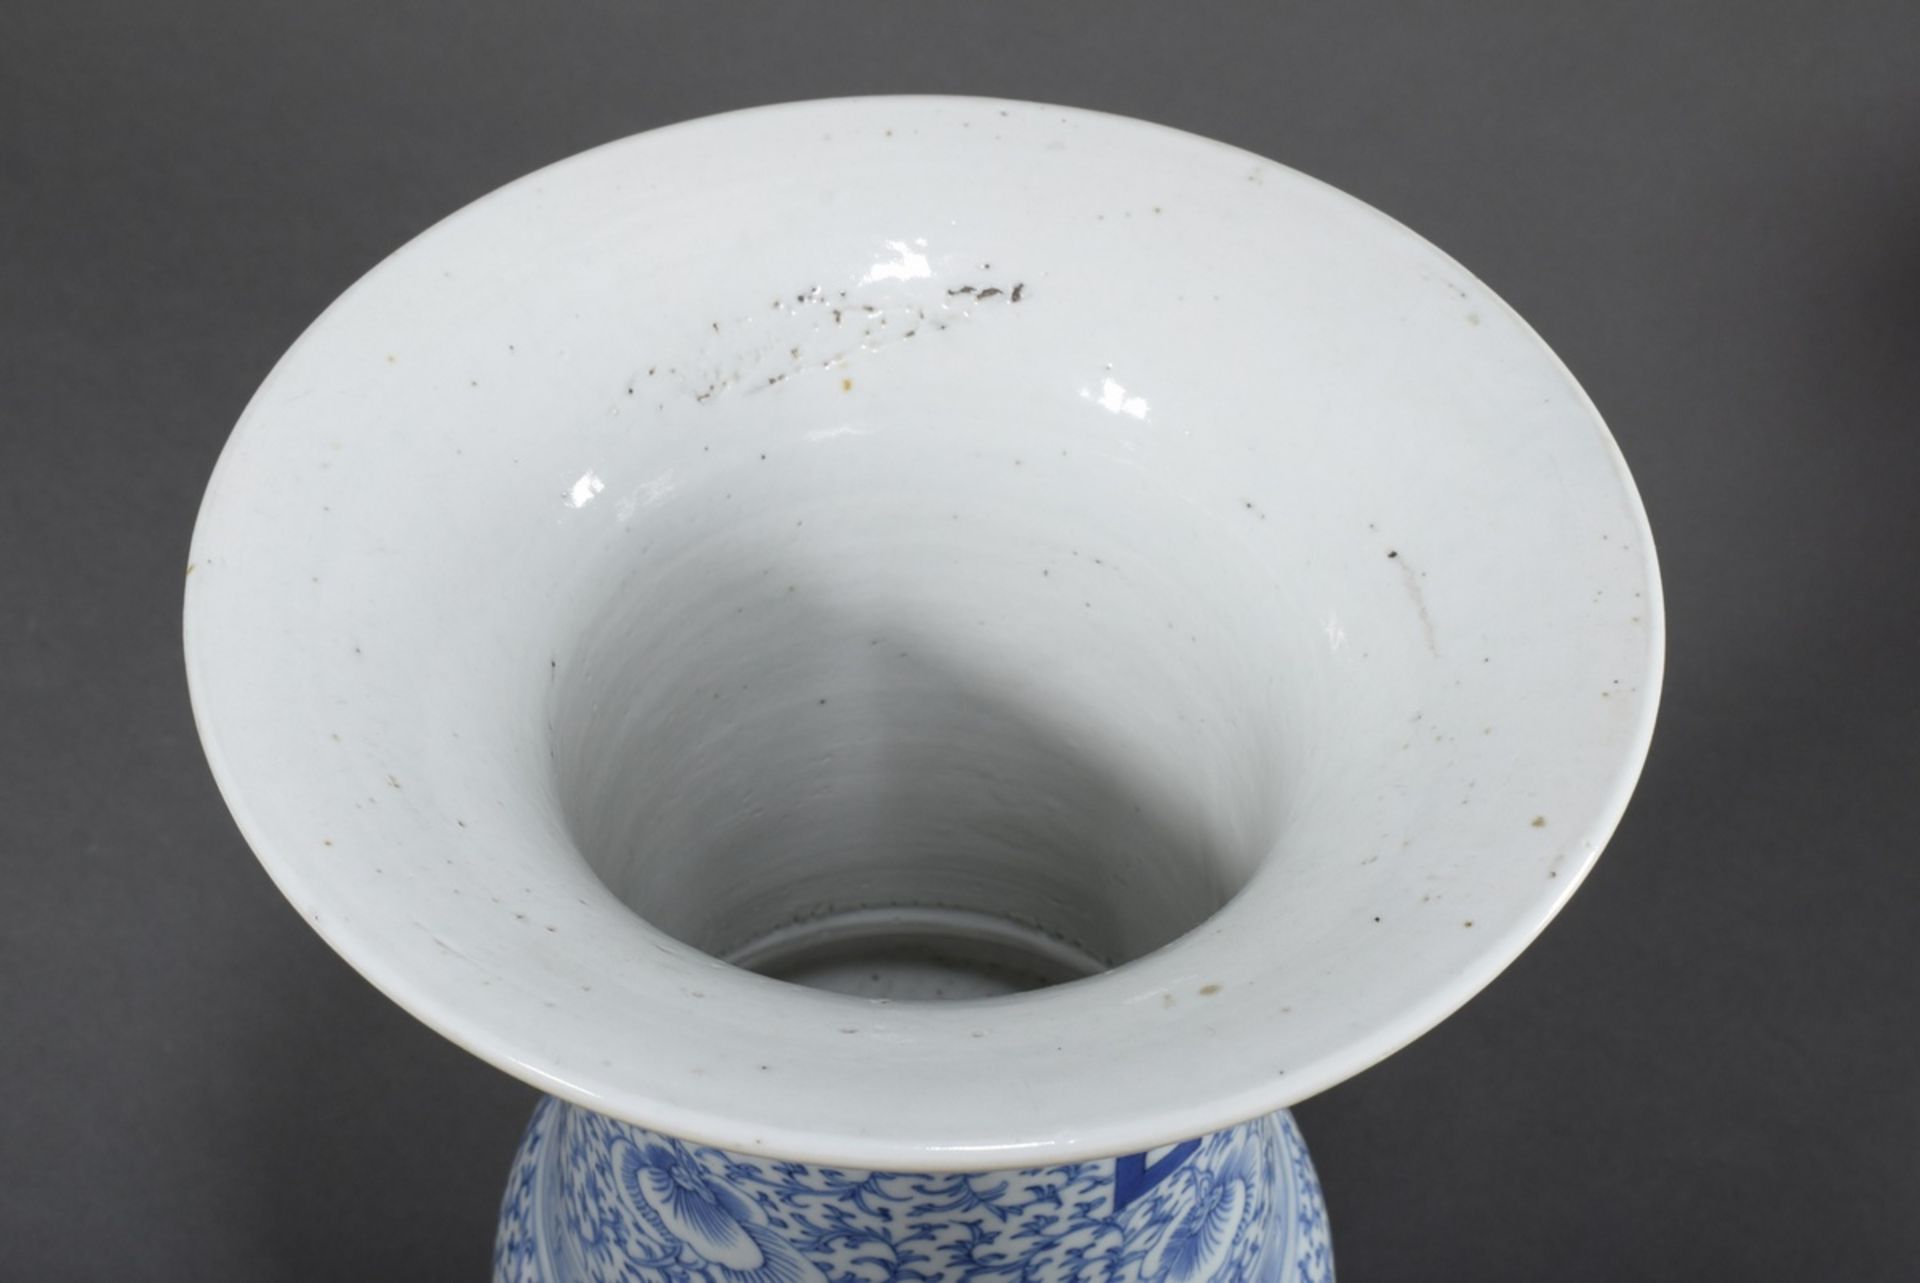 Chinesische Porzellan "Gu" Vase mit Blaumalerei "Glückszeichen" auf floralem Fond, H. 41cm, Ø 24cm - Bild 2 aus 6